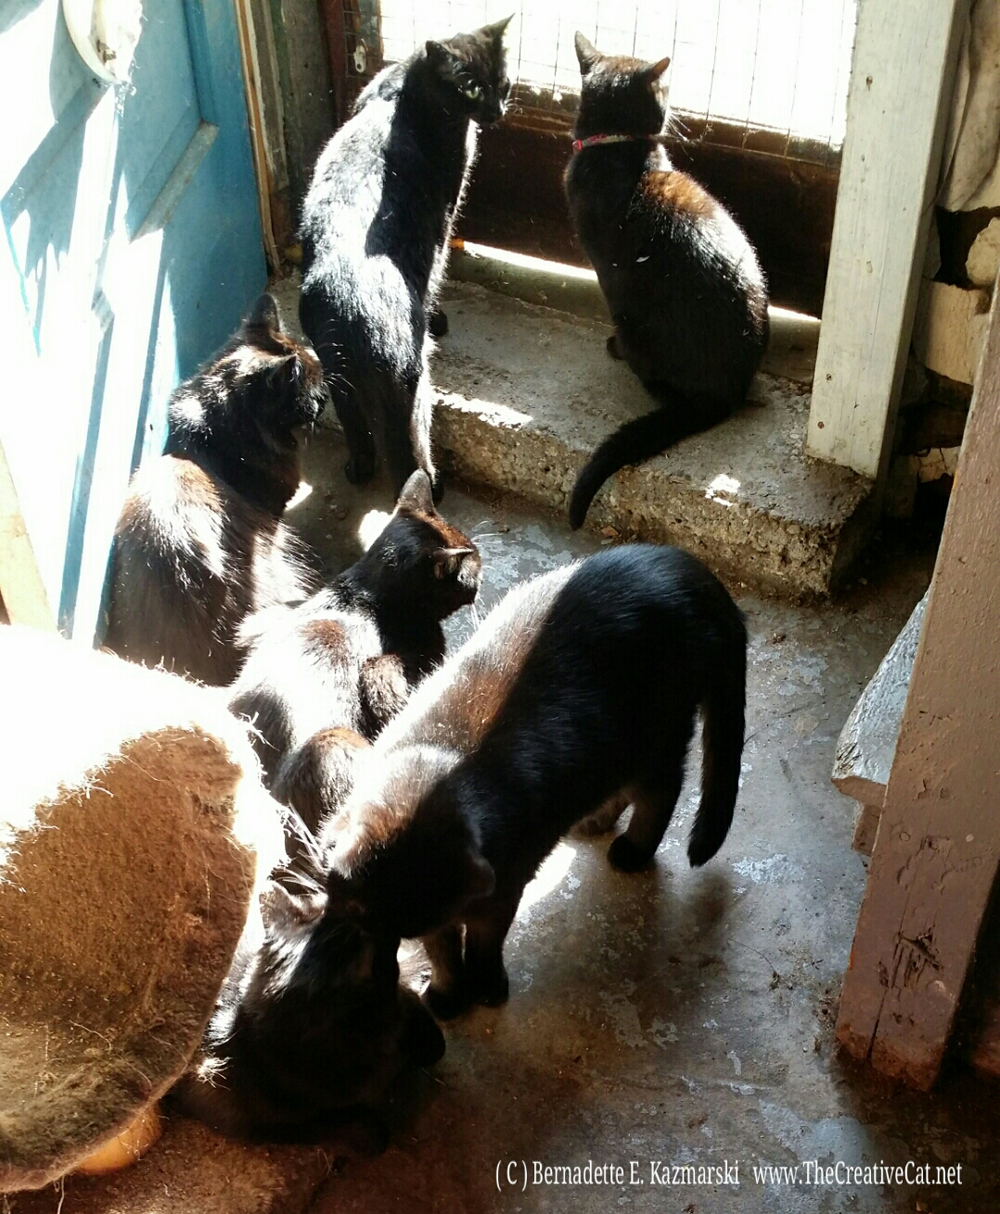 Six black cats enjoying the morning.